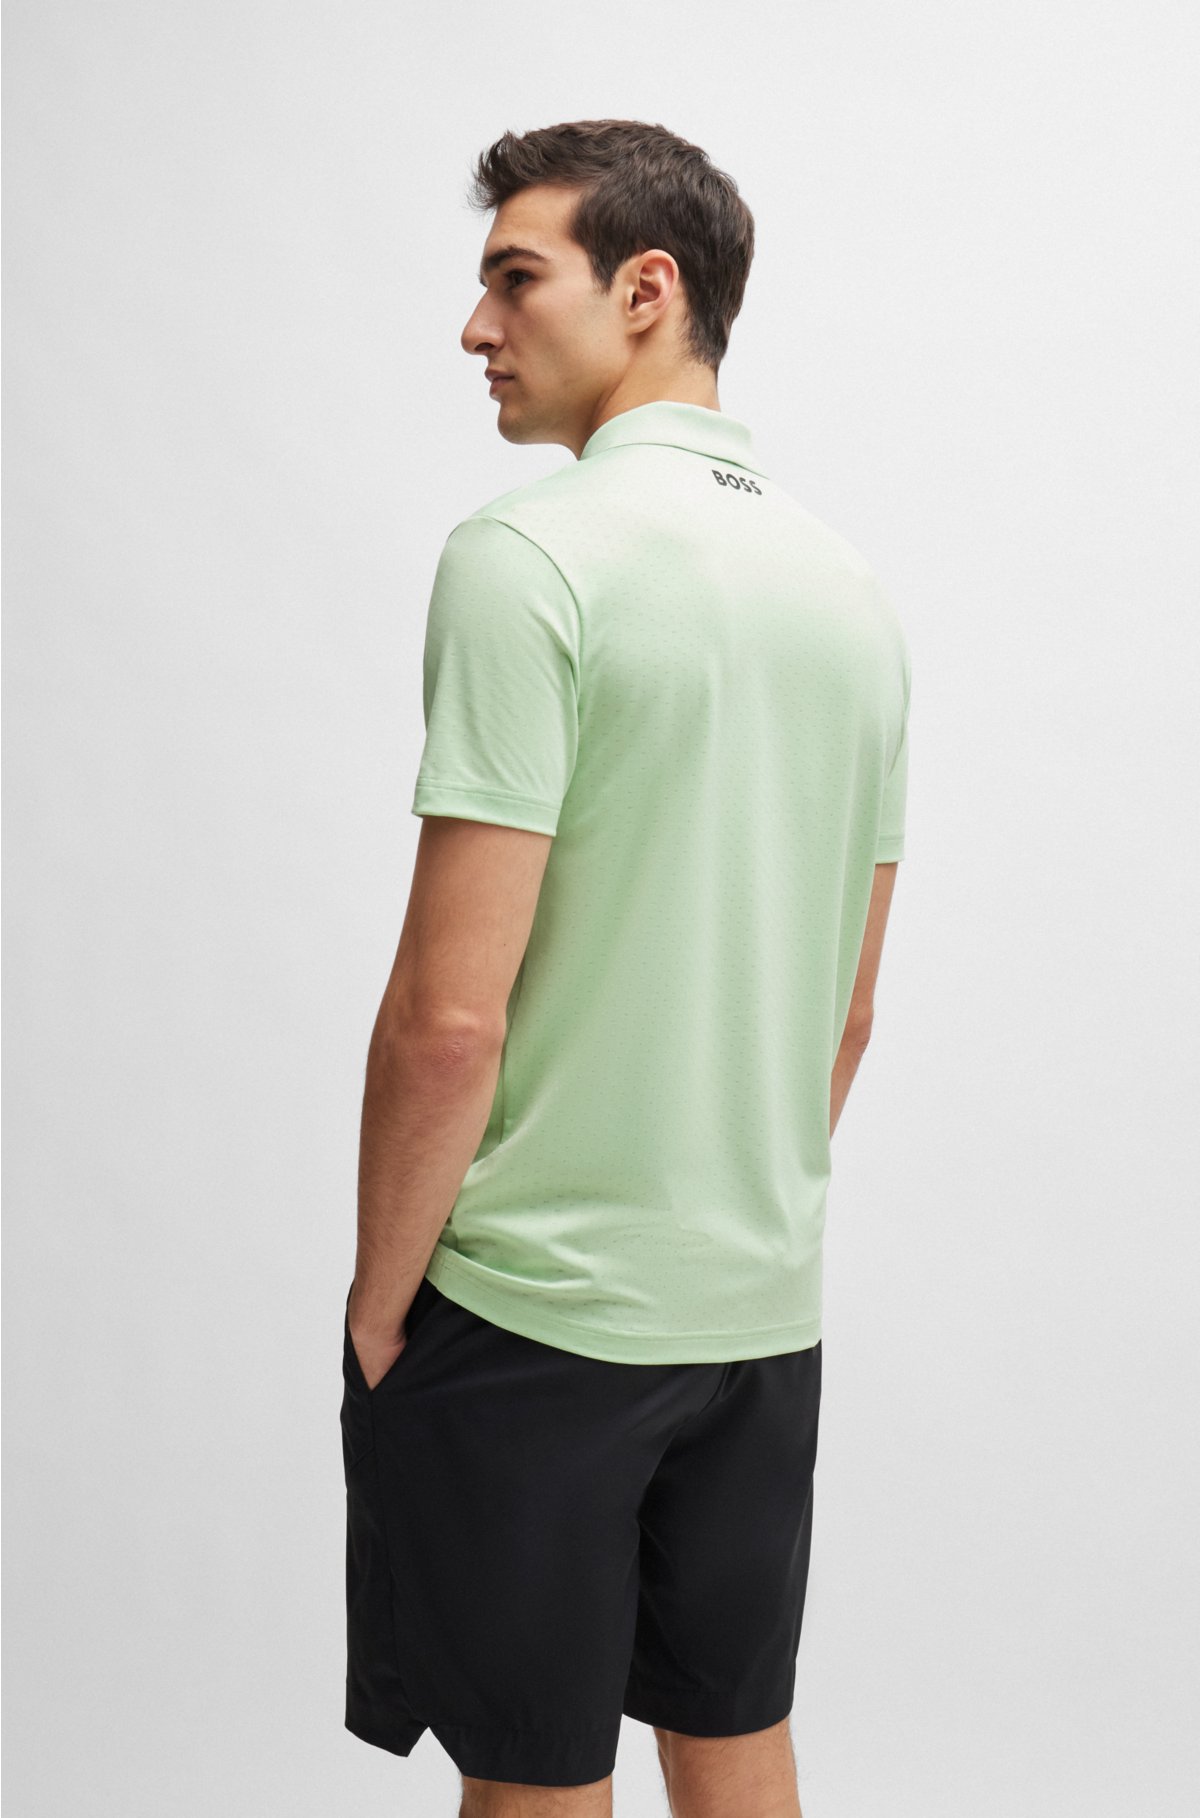 Degradé-jacquard polo shirt with contrast logo, Light Green